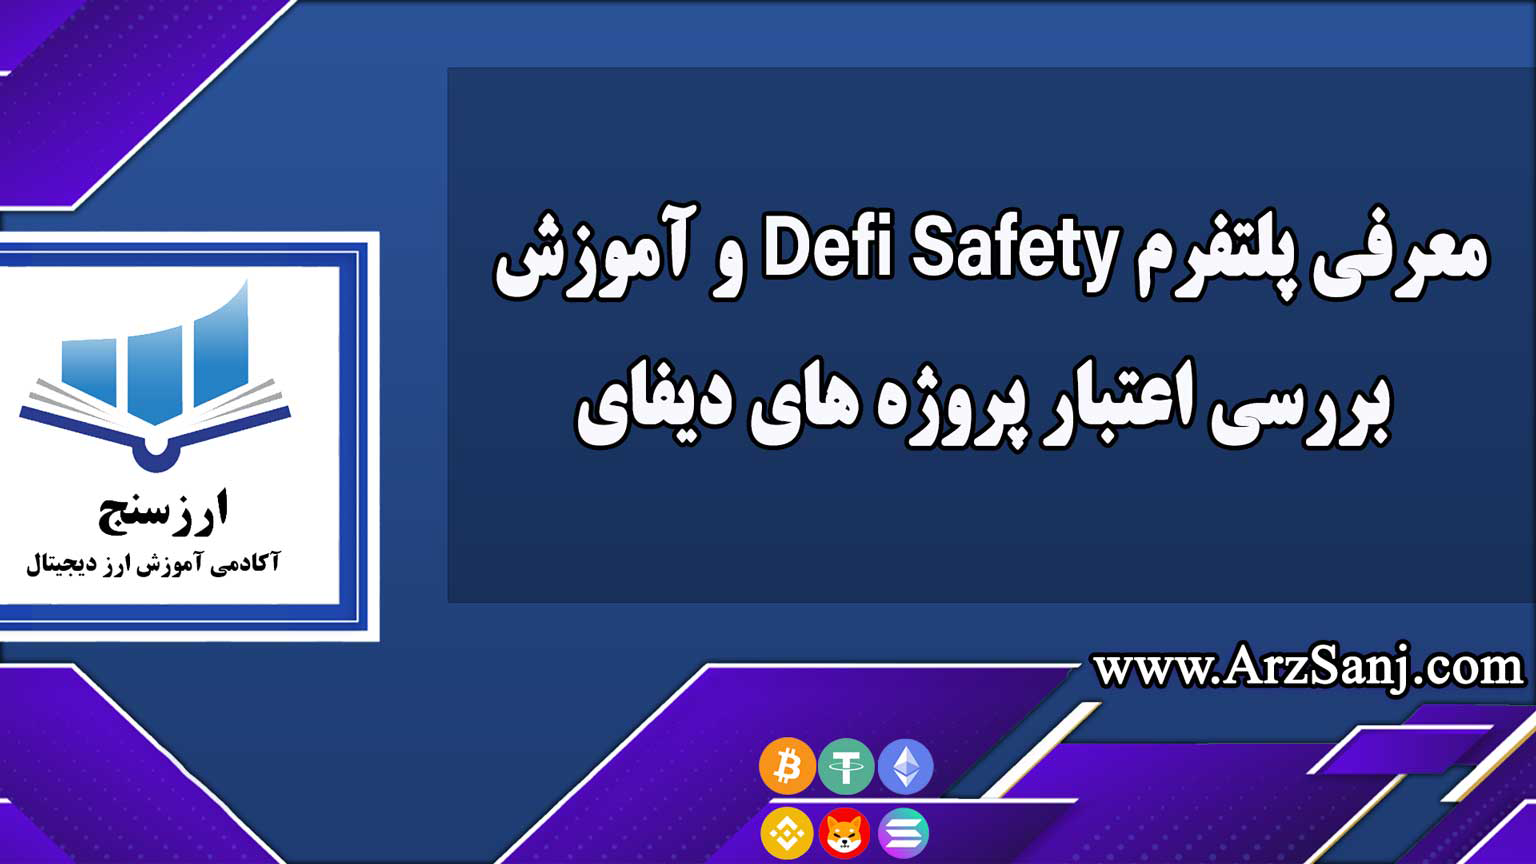 معرفی پلتفرم Defi Safety و آموزش بررسی اعتبار پروژه های دیفای